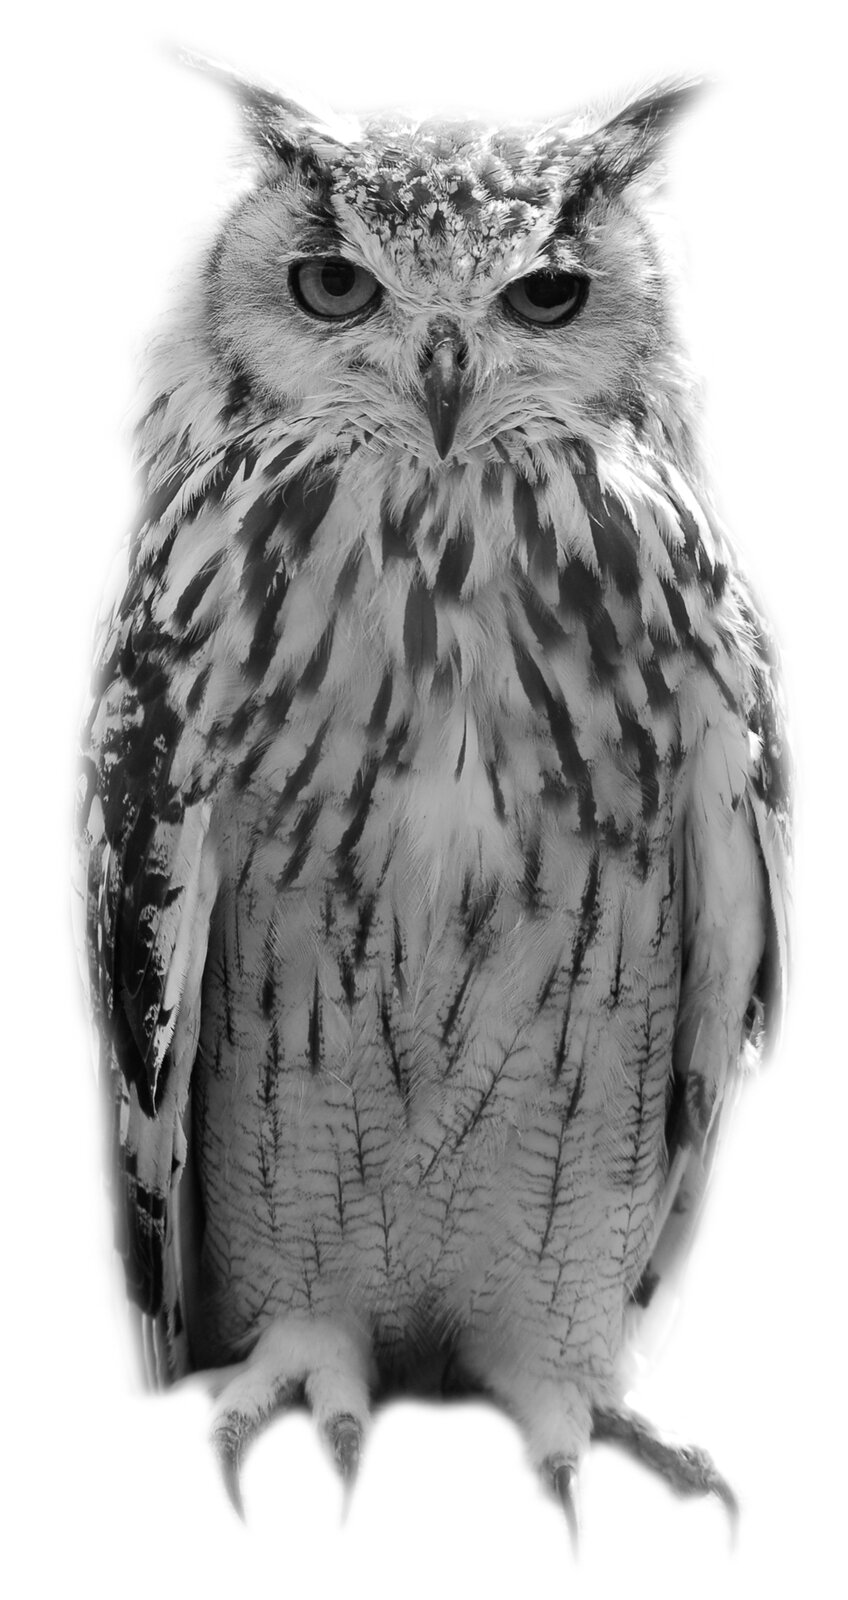 Fotografia przedstawia gęsto upierzonego ptaka o dużych oczach i zakrzywionym wąskim dziobie. Po bokach jego głowy sterczą pióra przypominające uszy. Tło jest białe.